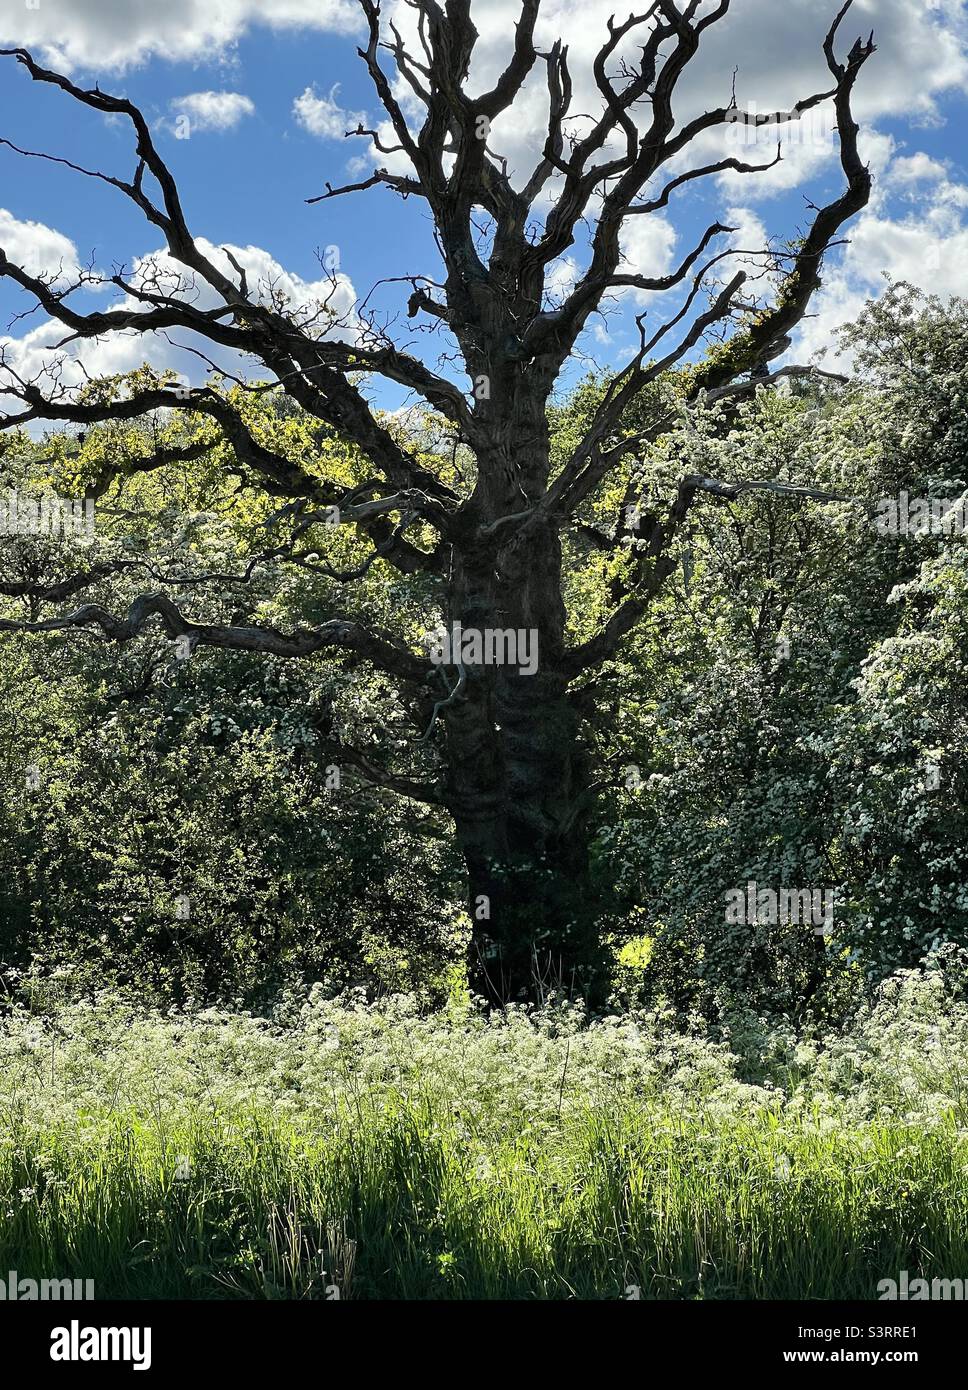 Dead oak tree Stock Photo